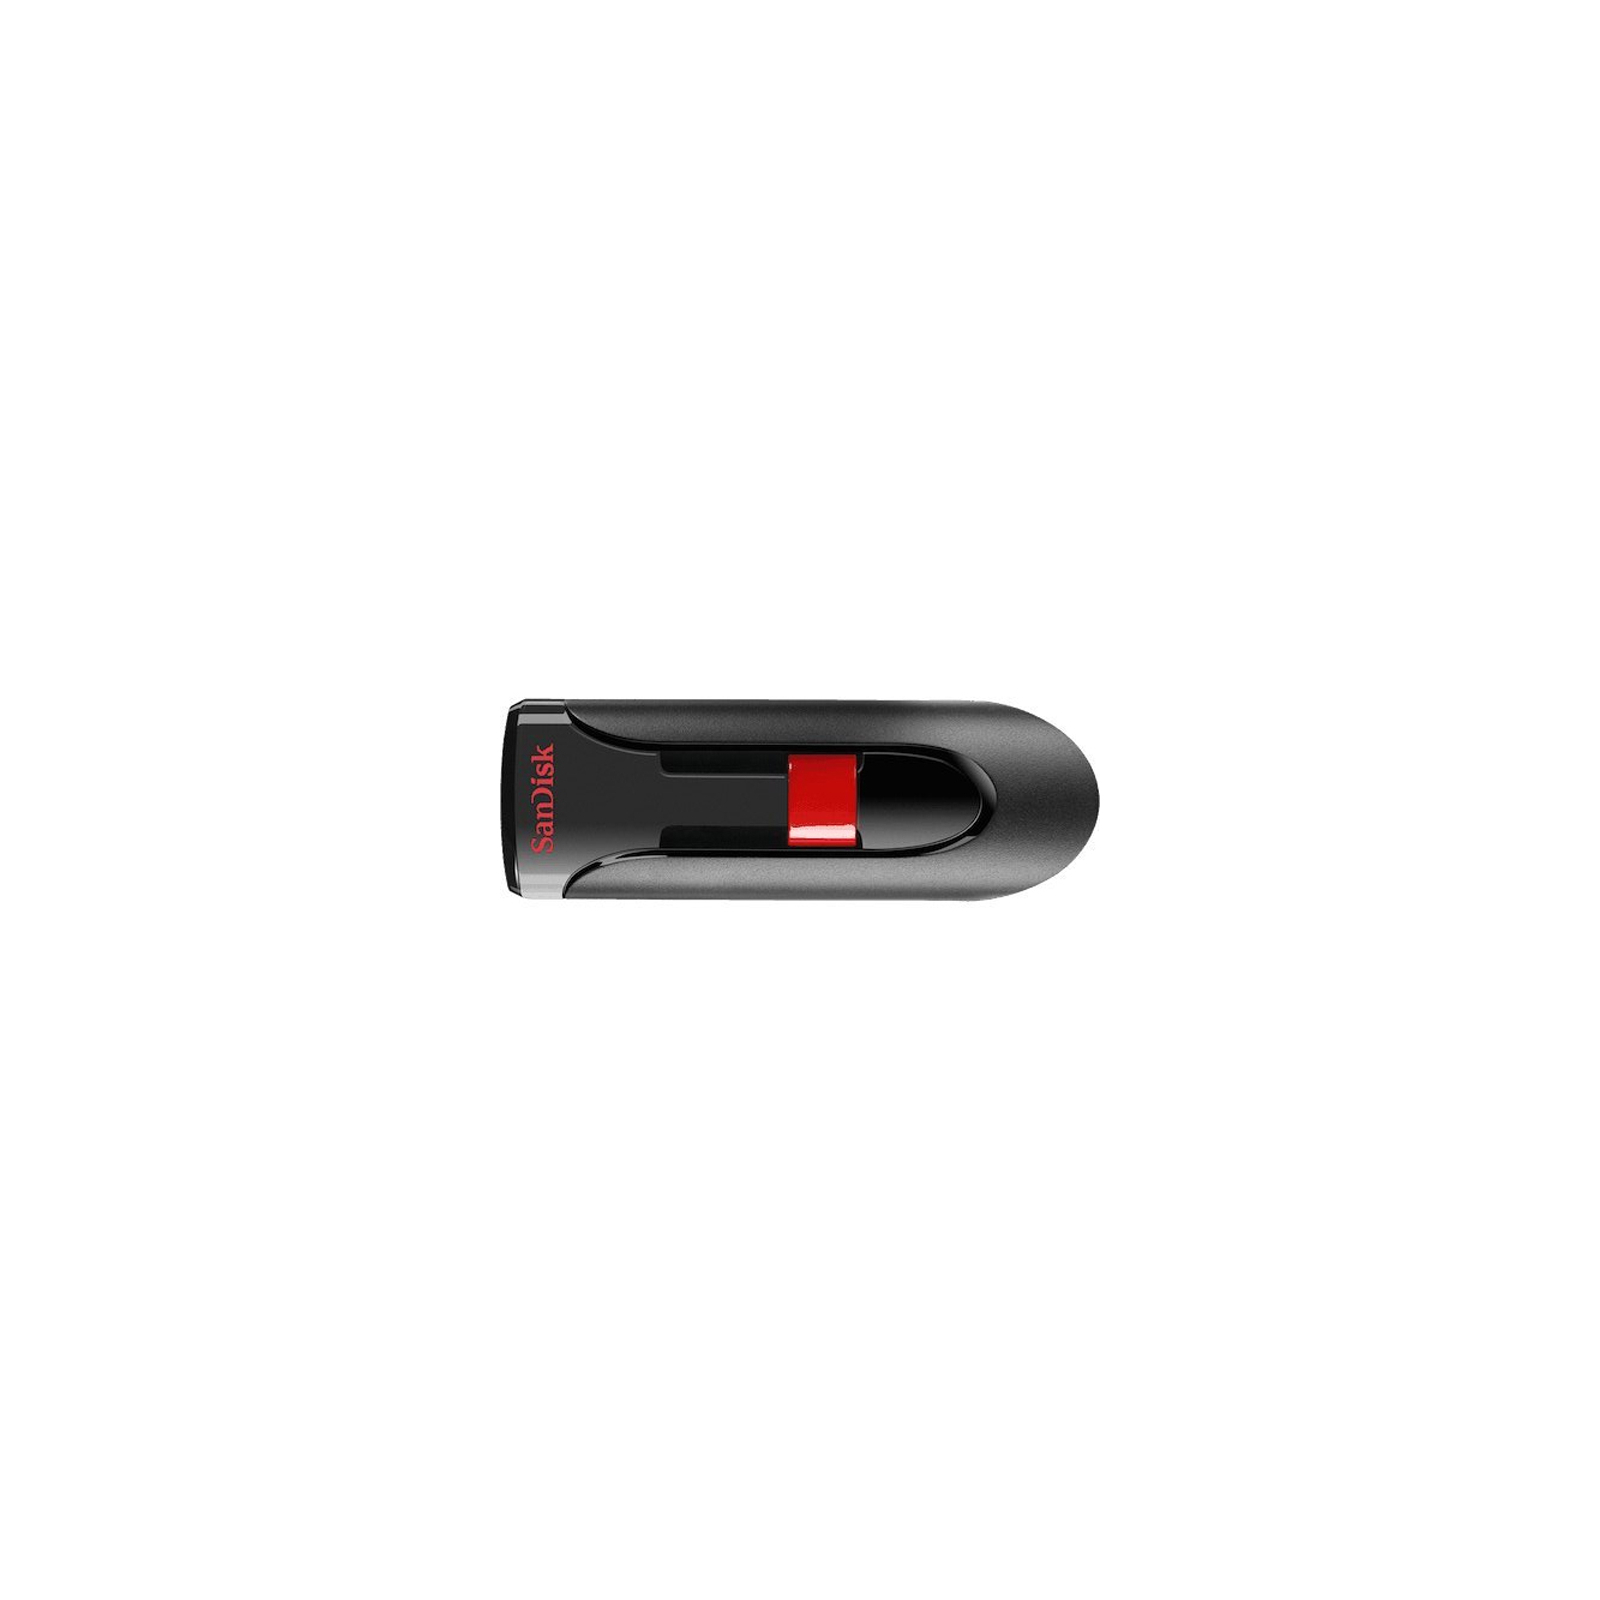 USB флеш накопитель SanDisk 256GB Cruzer Glide Black USB 3.0 (SDCZ600-256G-G35)